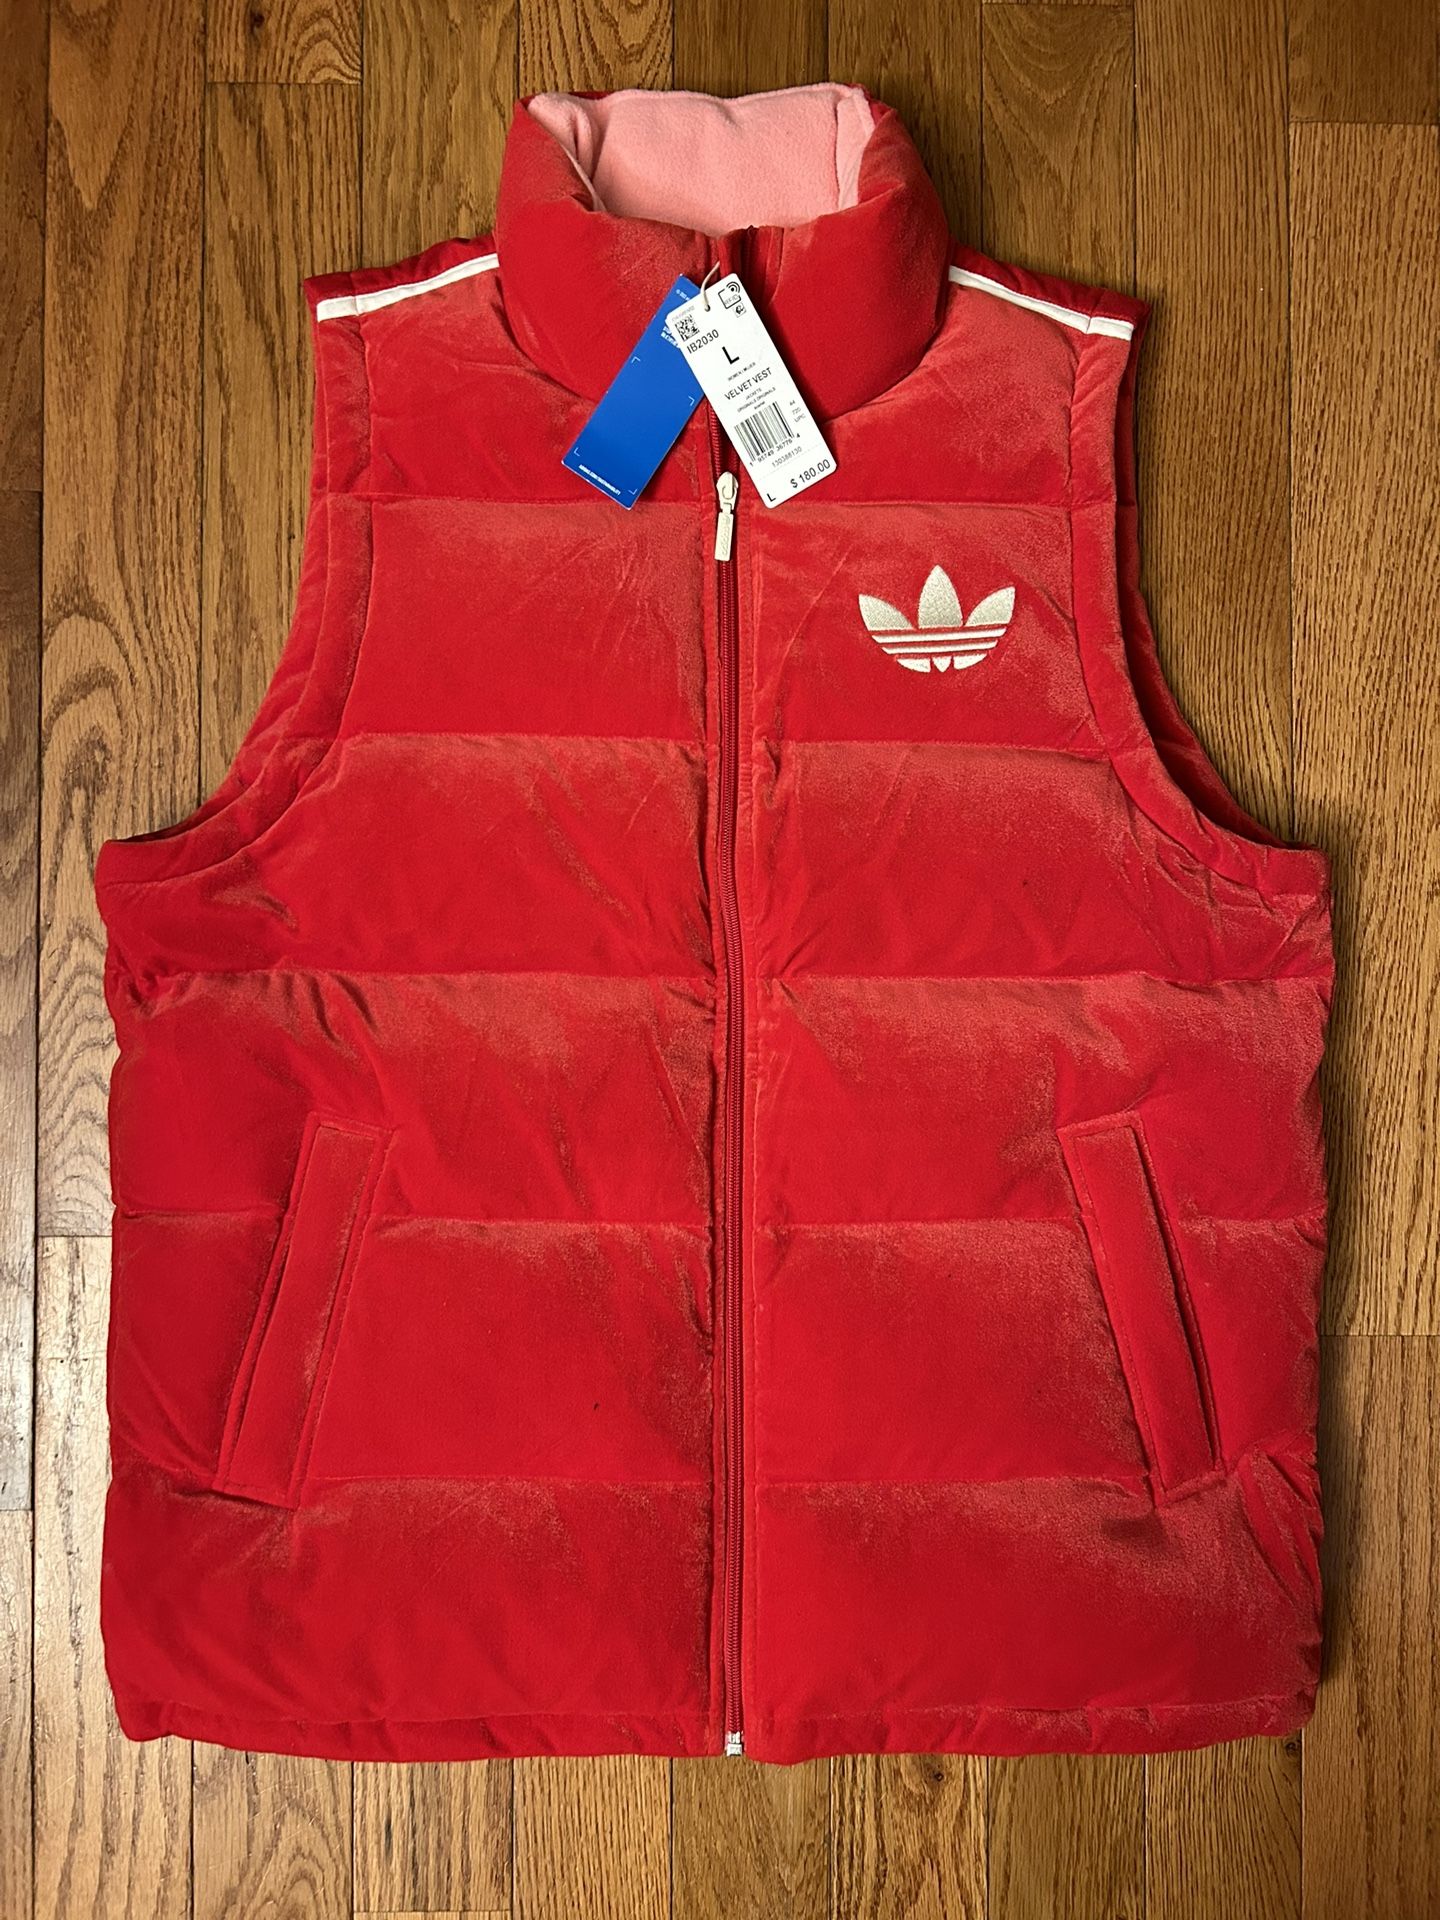 Adidas Velvet Puffer Red Vest Size Large NEW